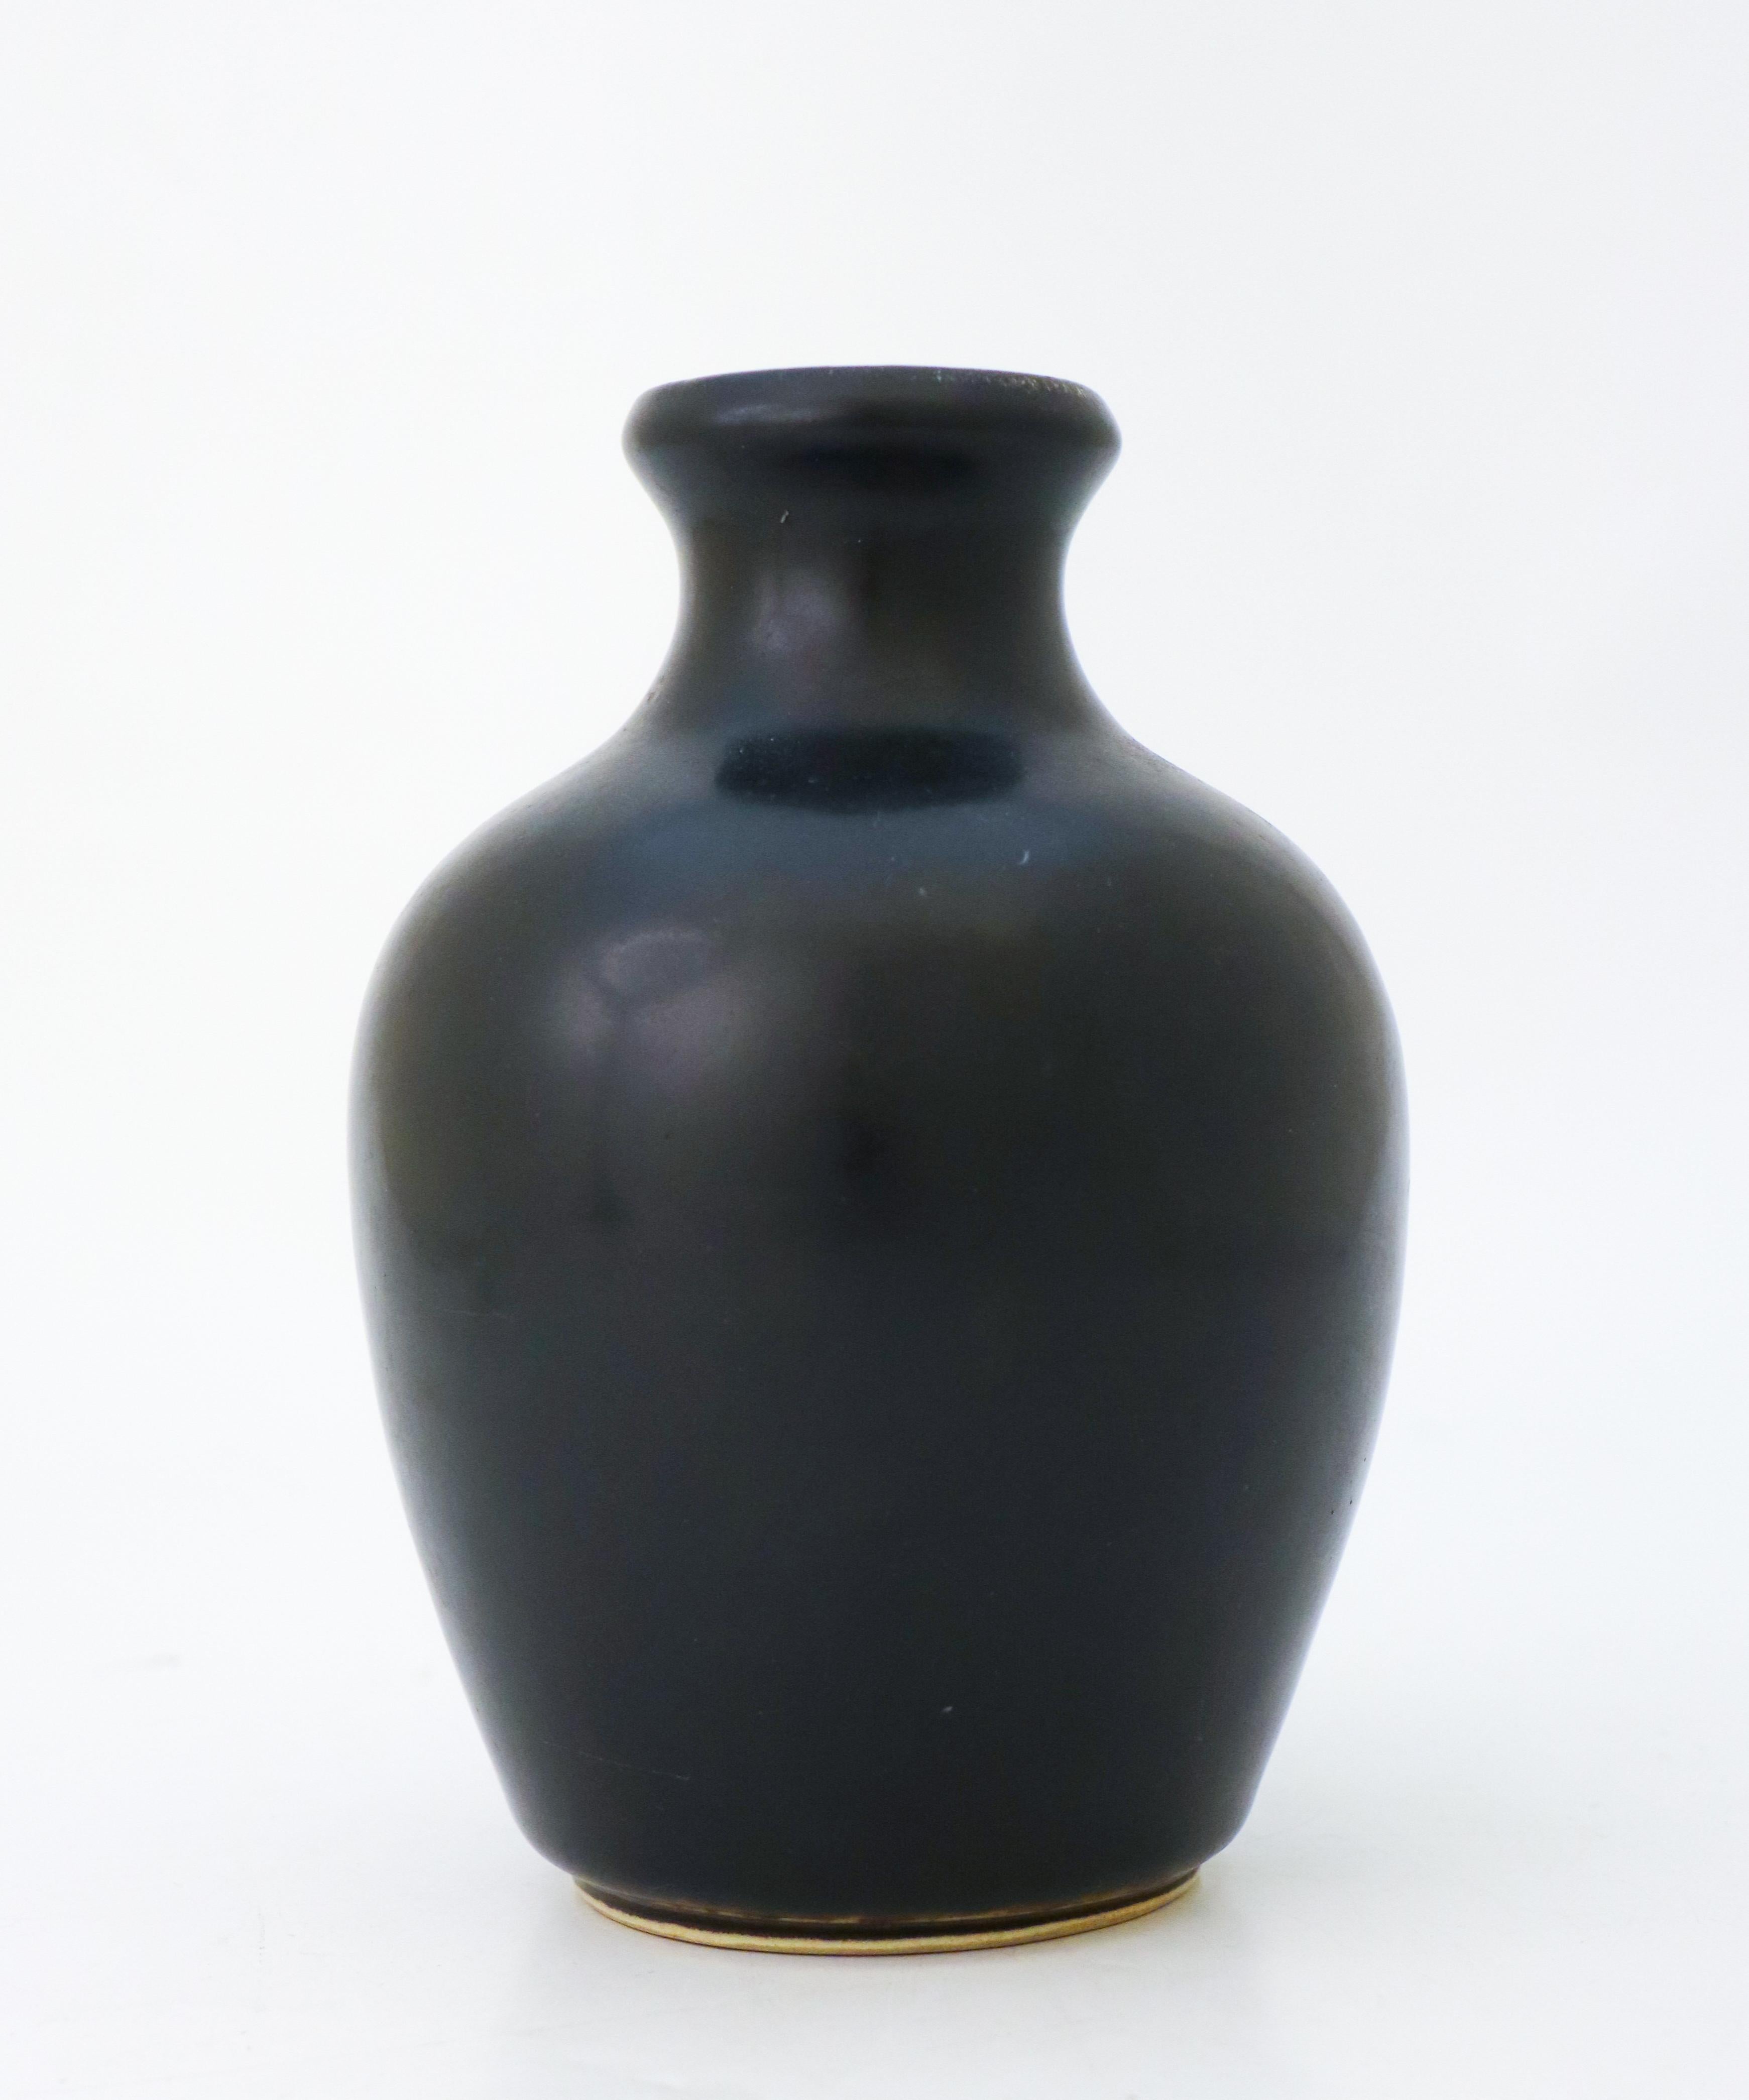 Glazed Black Vase - Carl-Harry Stålhane - Rörstrand Atelier - Mid 20th Century Modern For Sale